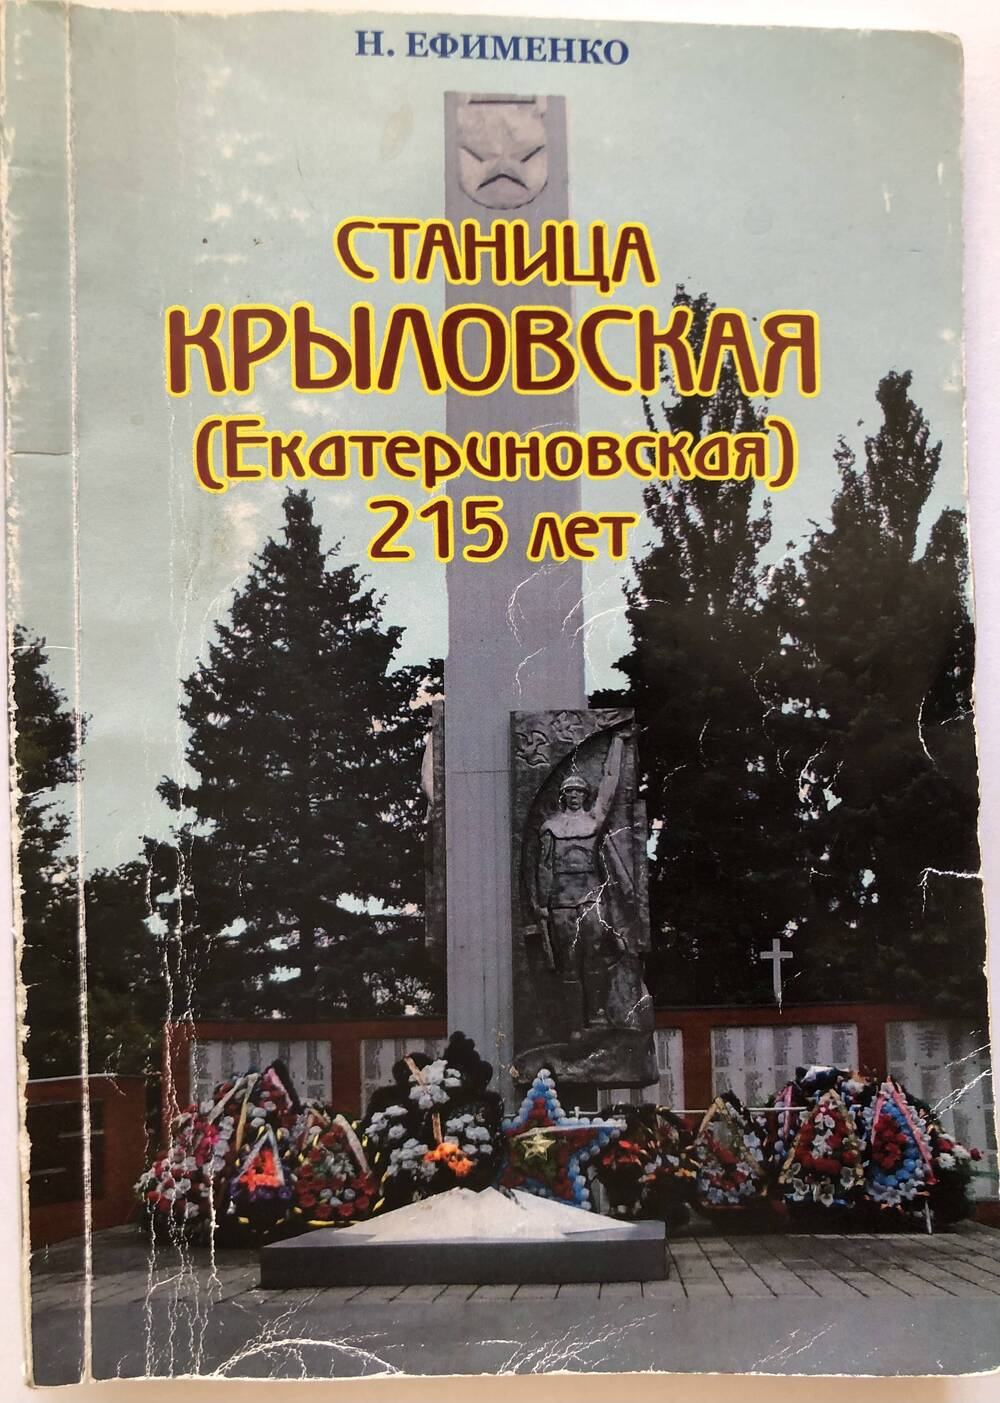 Книга Н. Ефименко. Станица Крыловская-Екатериновская 215 лет.